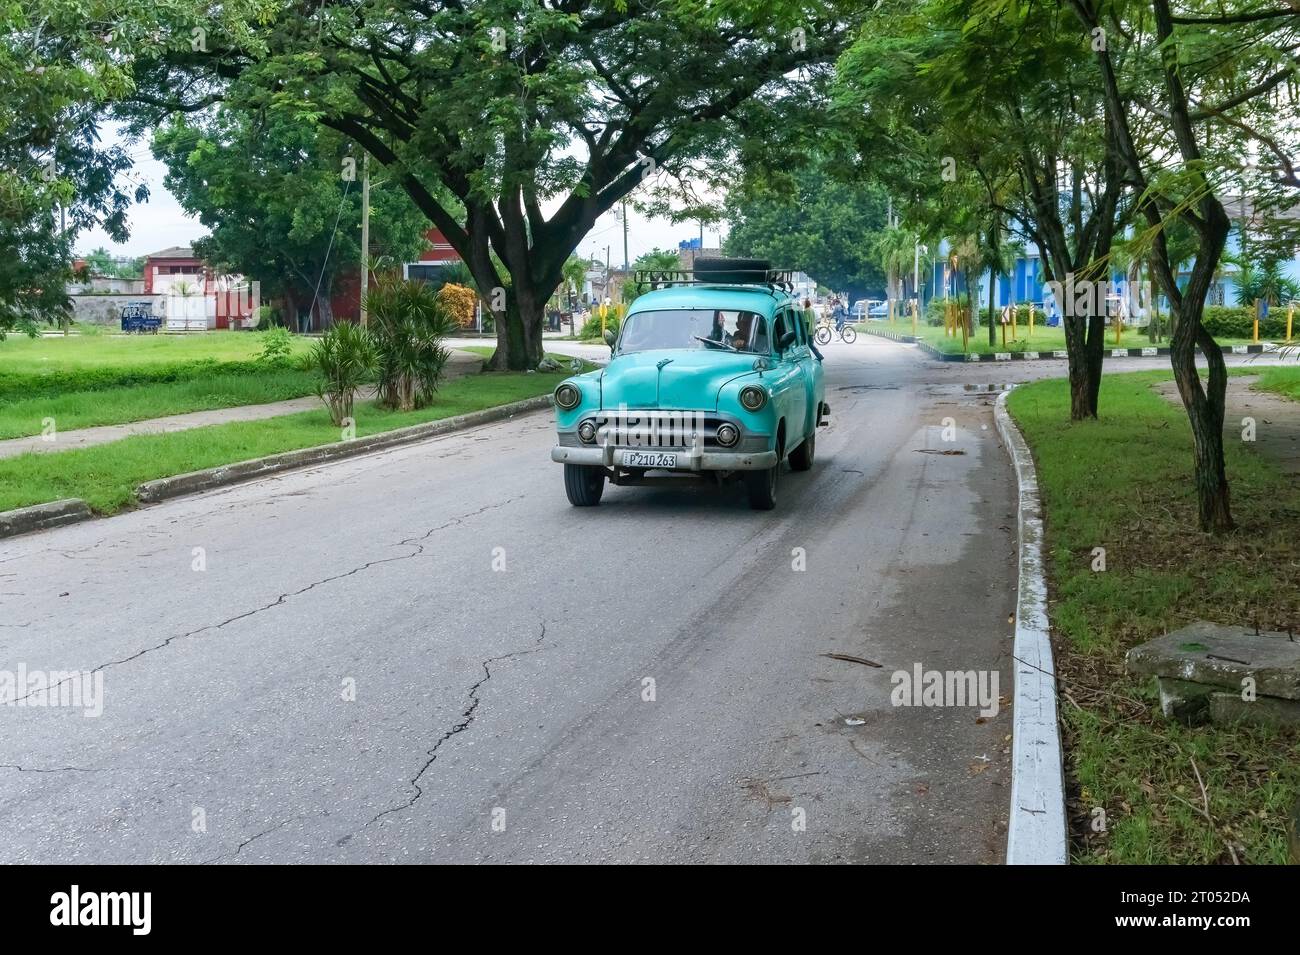 Une voiture américaine vintage privée conduisant dans une rue de la ville. Ce type de véhicules à moteur sont communs dans le pays.Santa Clara, Cuba, 2023 Banque D'Images